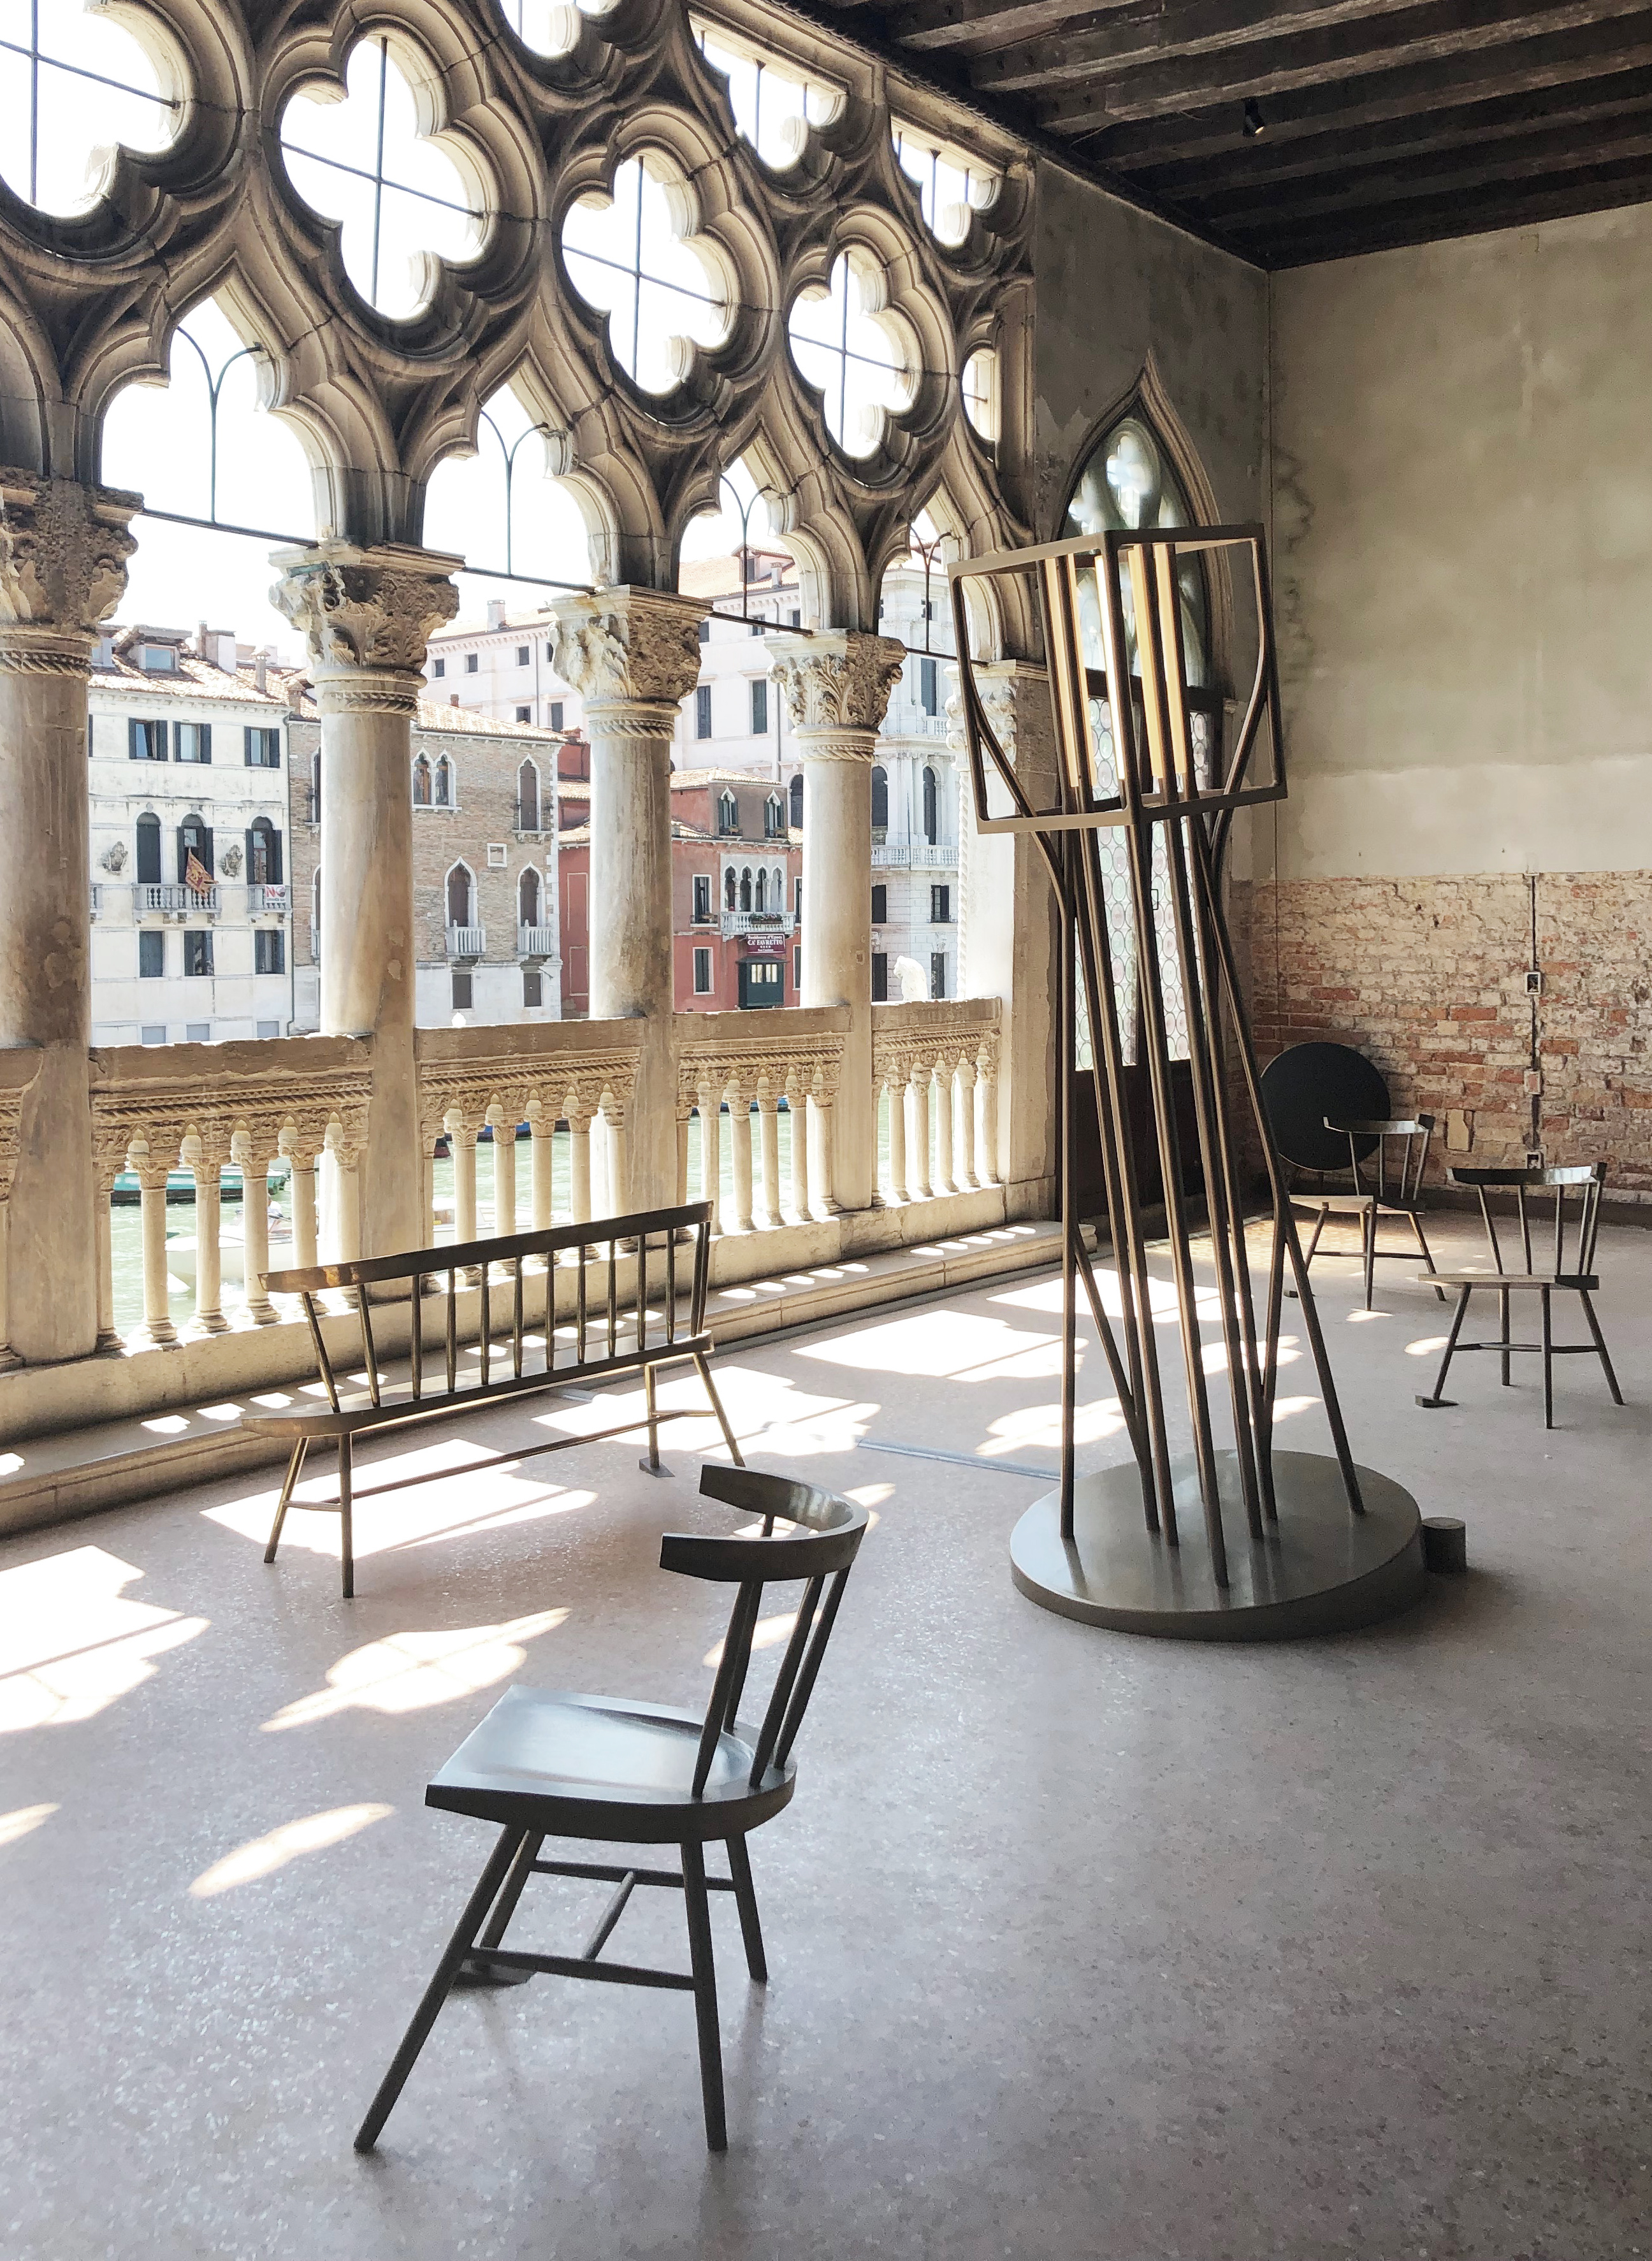 DYSFUNCTIONAL exhibition Gallery Giorgio Franchetti alla Ca’ d’Oro VENICE